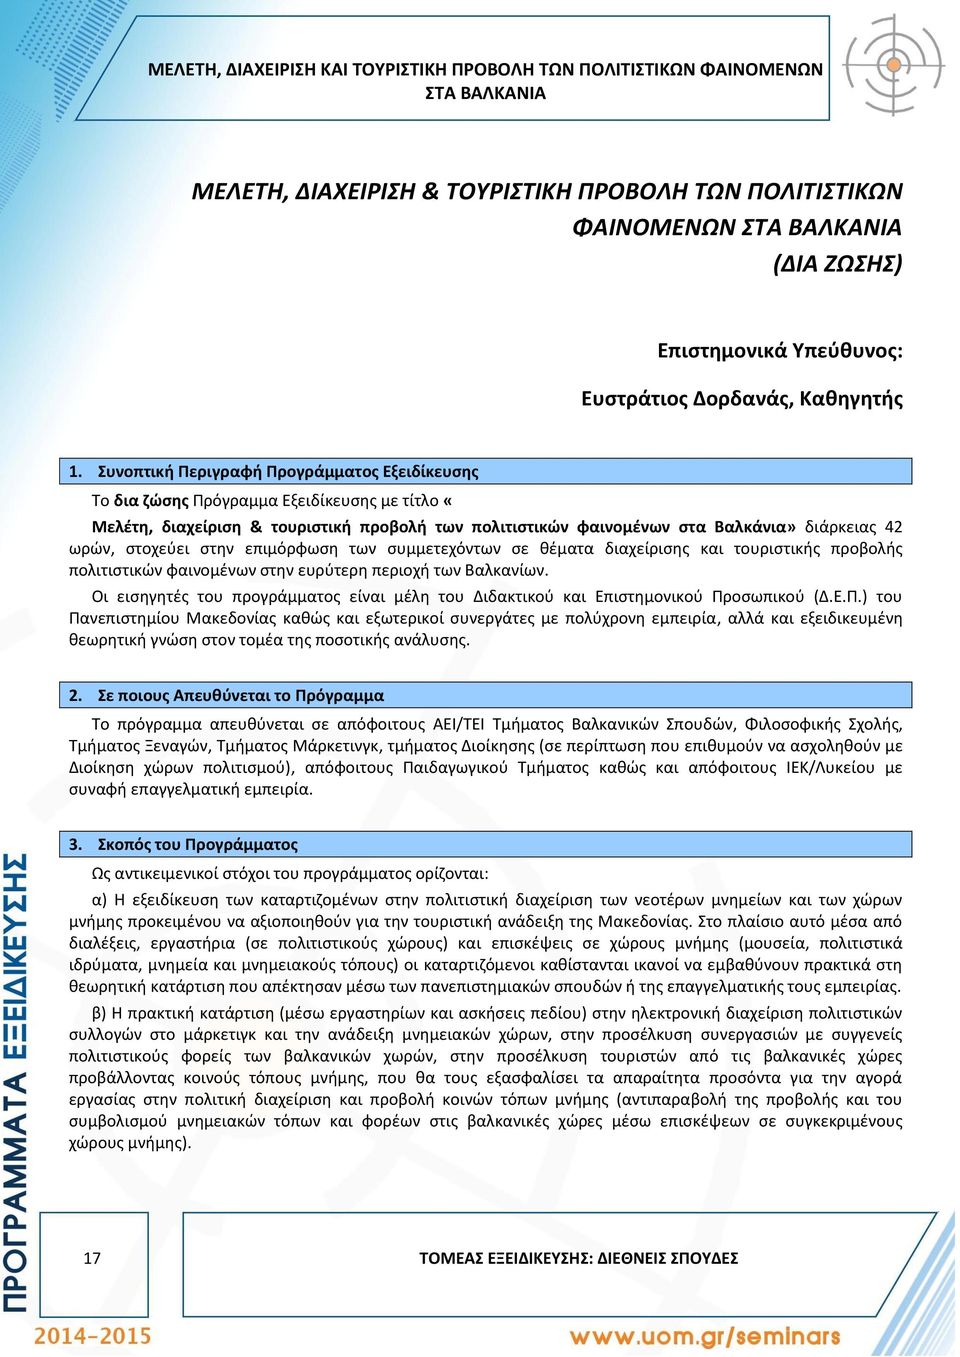 Συνοπτική Περιγραφή Προγράμματος Εξειδίκευσης Το δια ζώσης Πρόγραμμα Εξειδίκευσης με τίτλο «Μελέτη, διαχείριση & τουριστική προβολή των πολιτιστικών φαινομένων στα Βαλκάνια» διάρκειας 42 ωρών,